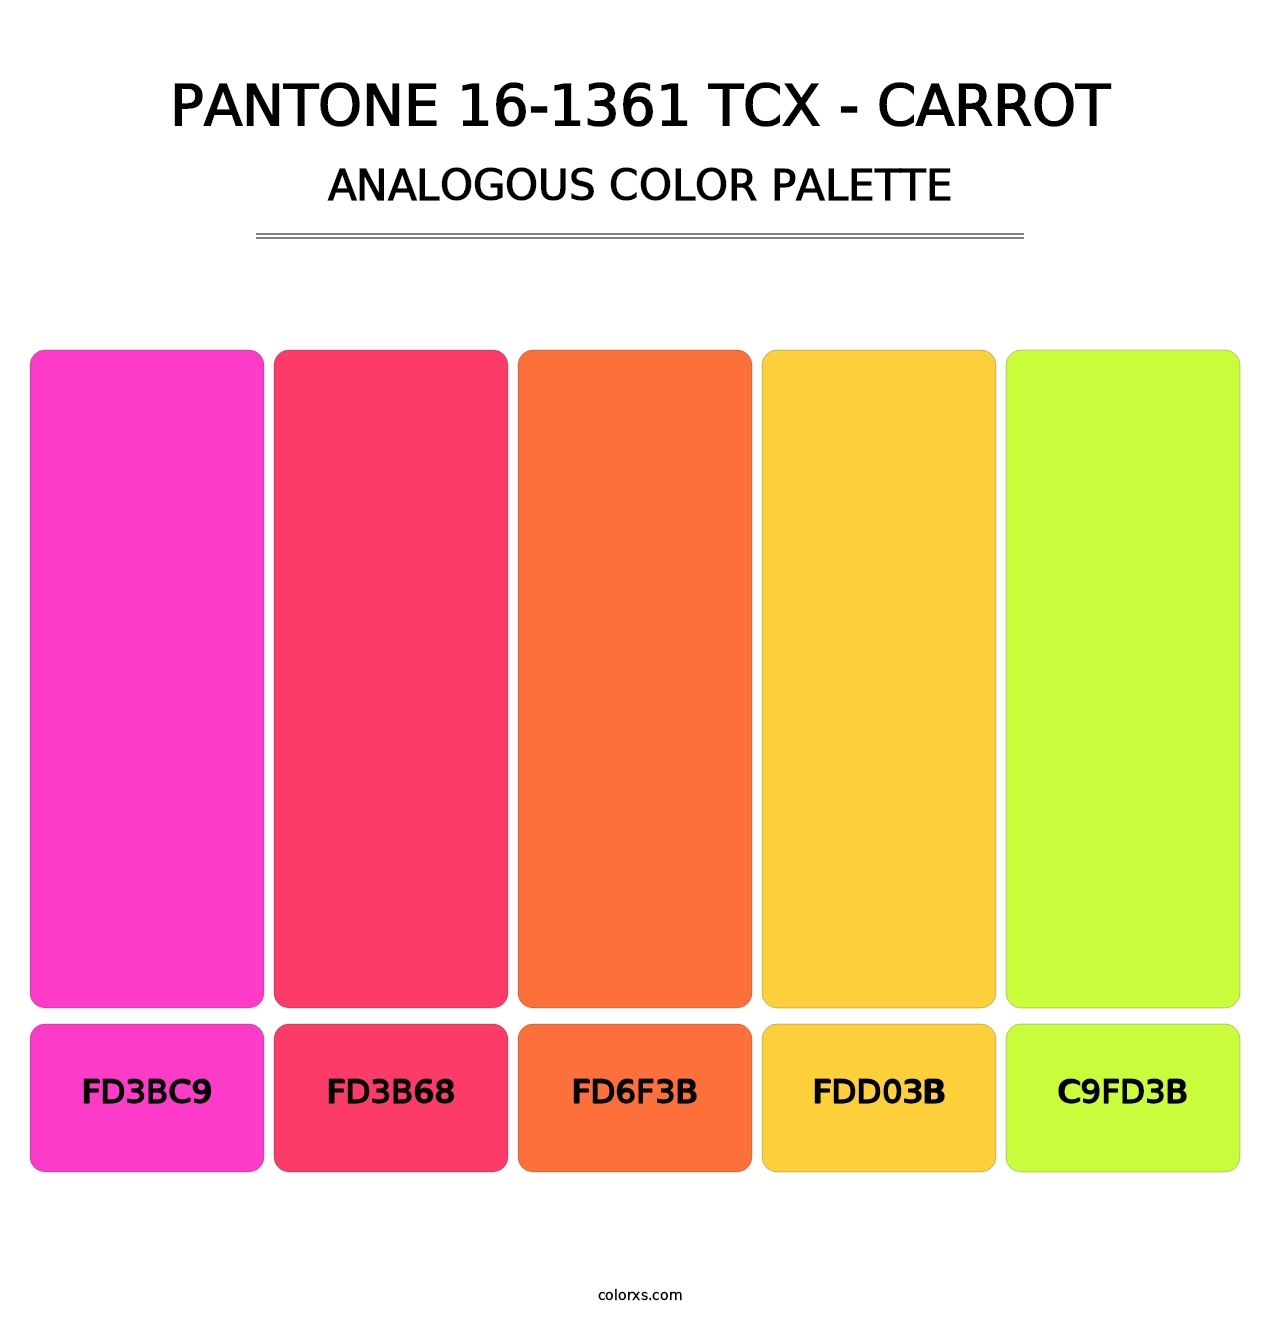 PANTONE 16-1361 TCX - Carrot - Analogous Color Palette